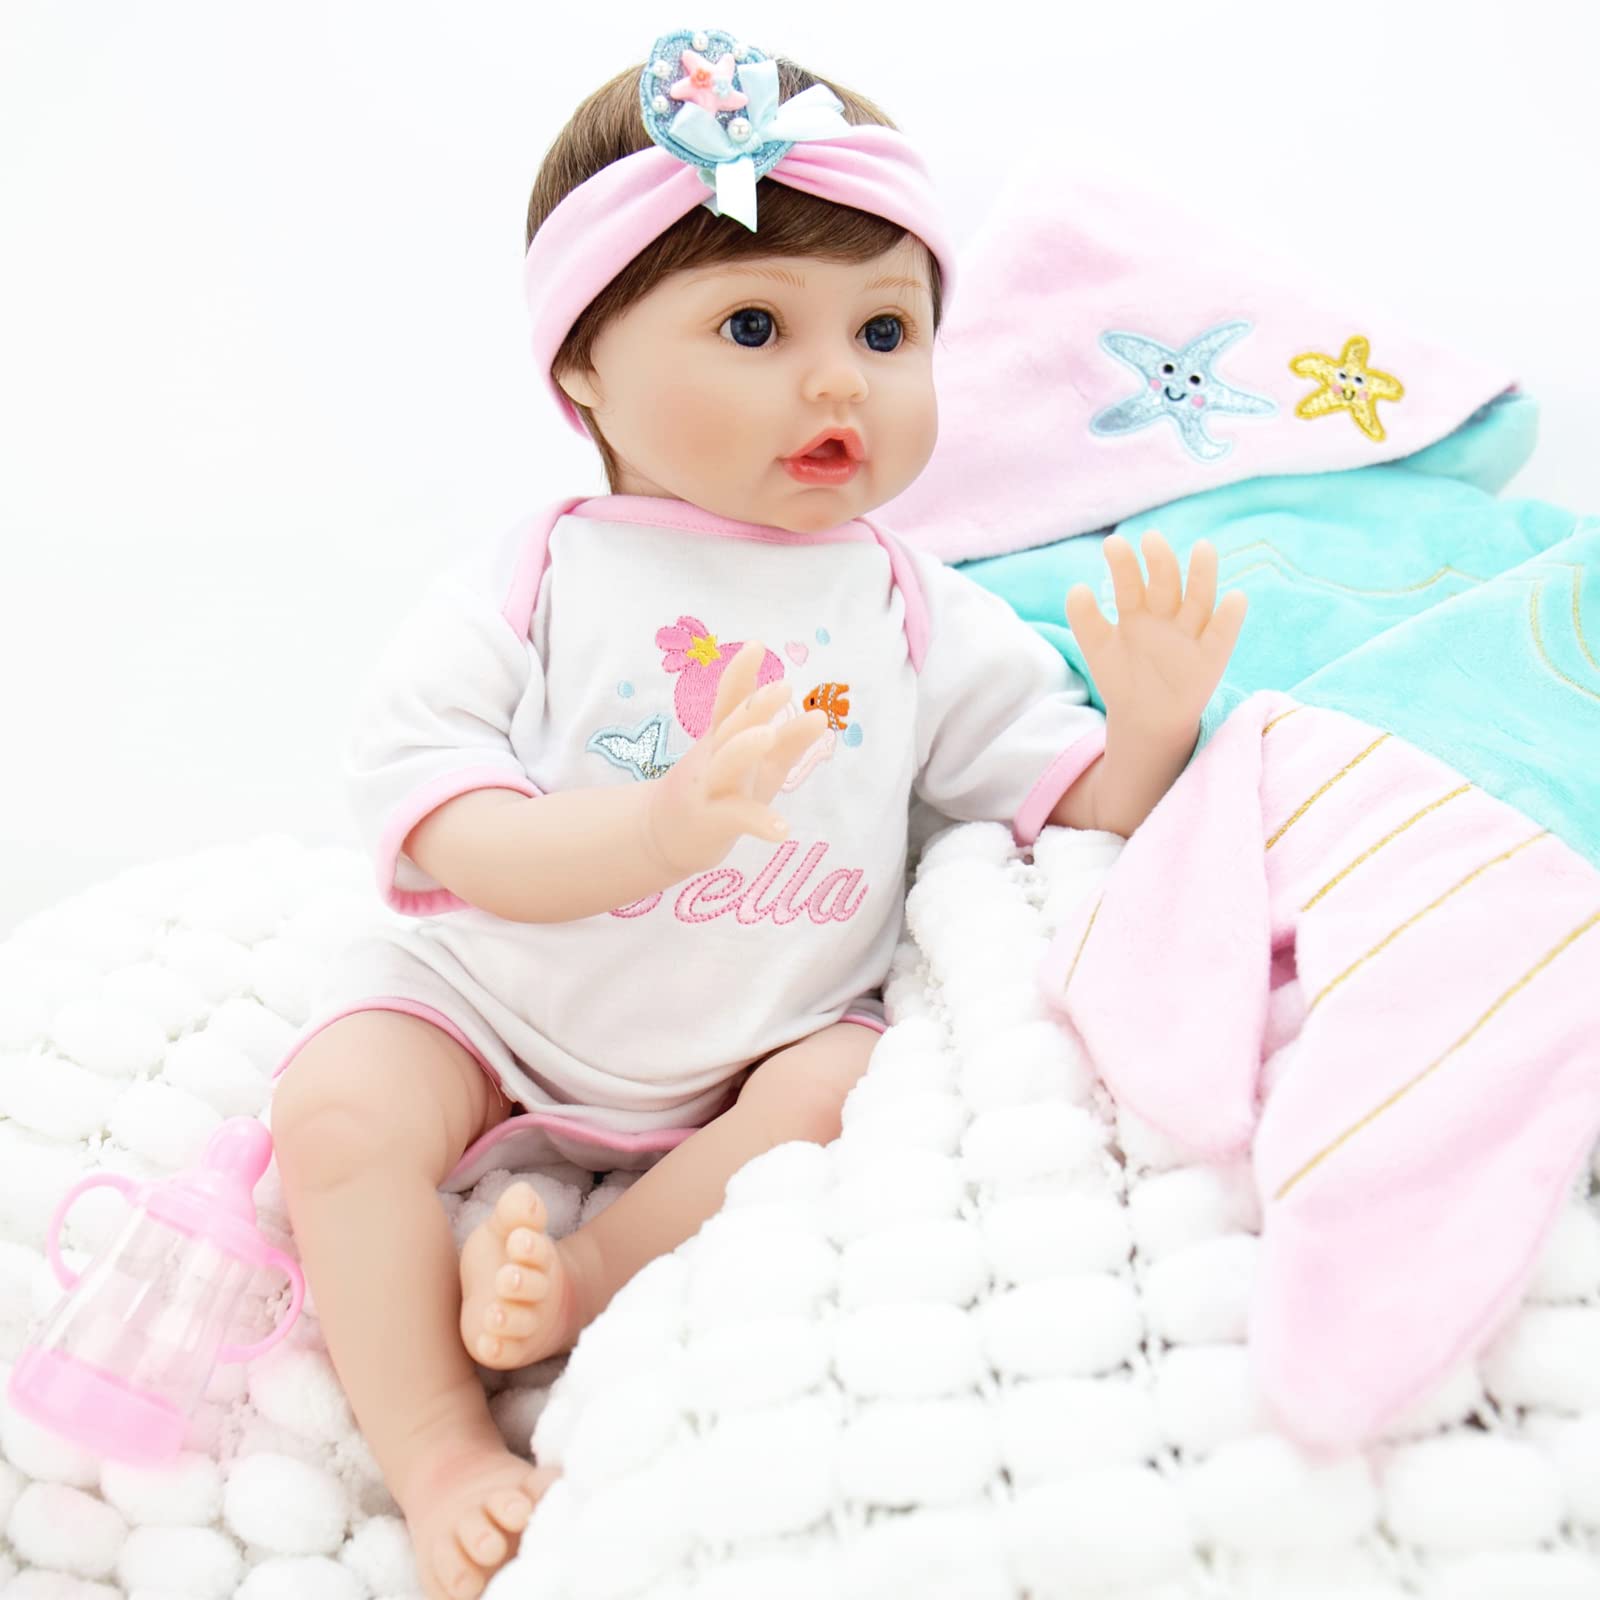 Aori Reborn Baby Doll Bebe Realista con traje de sirena y caballito de mar